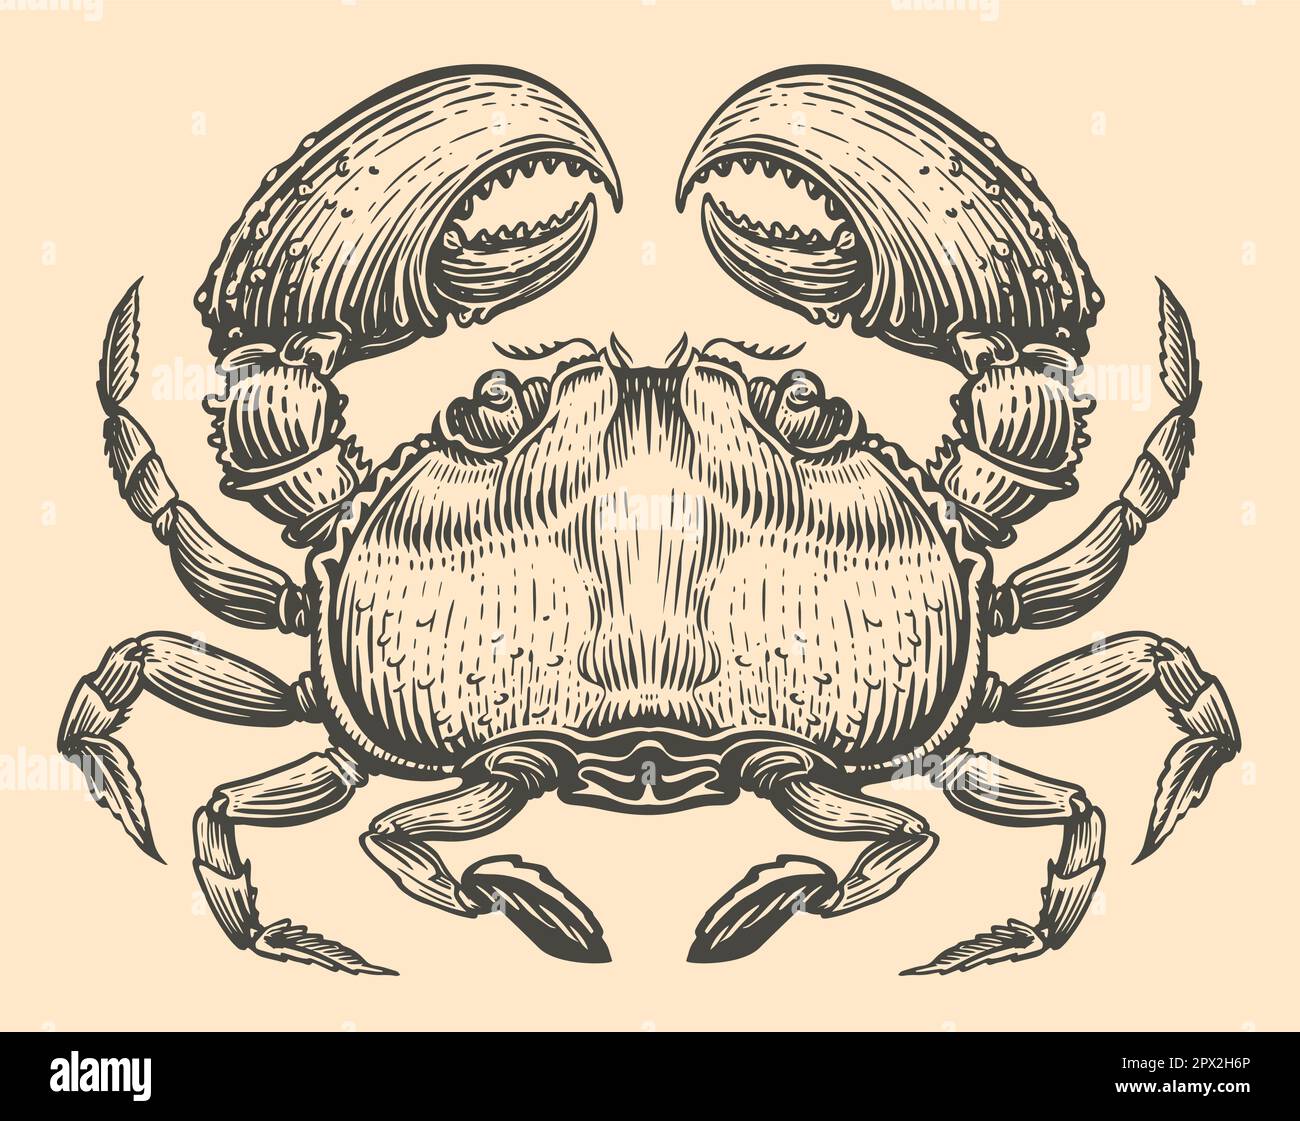 Von Hand gezeichnete Krabben-Gravurskizze. Tiervektordarstellung Stock Vektor